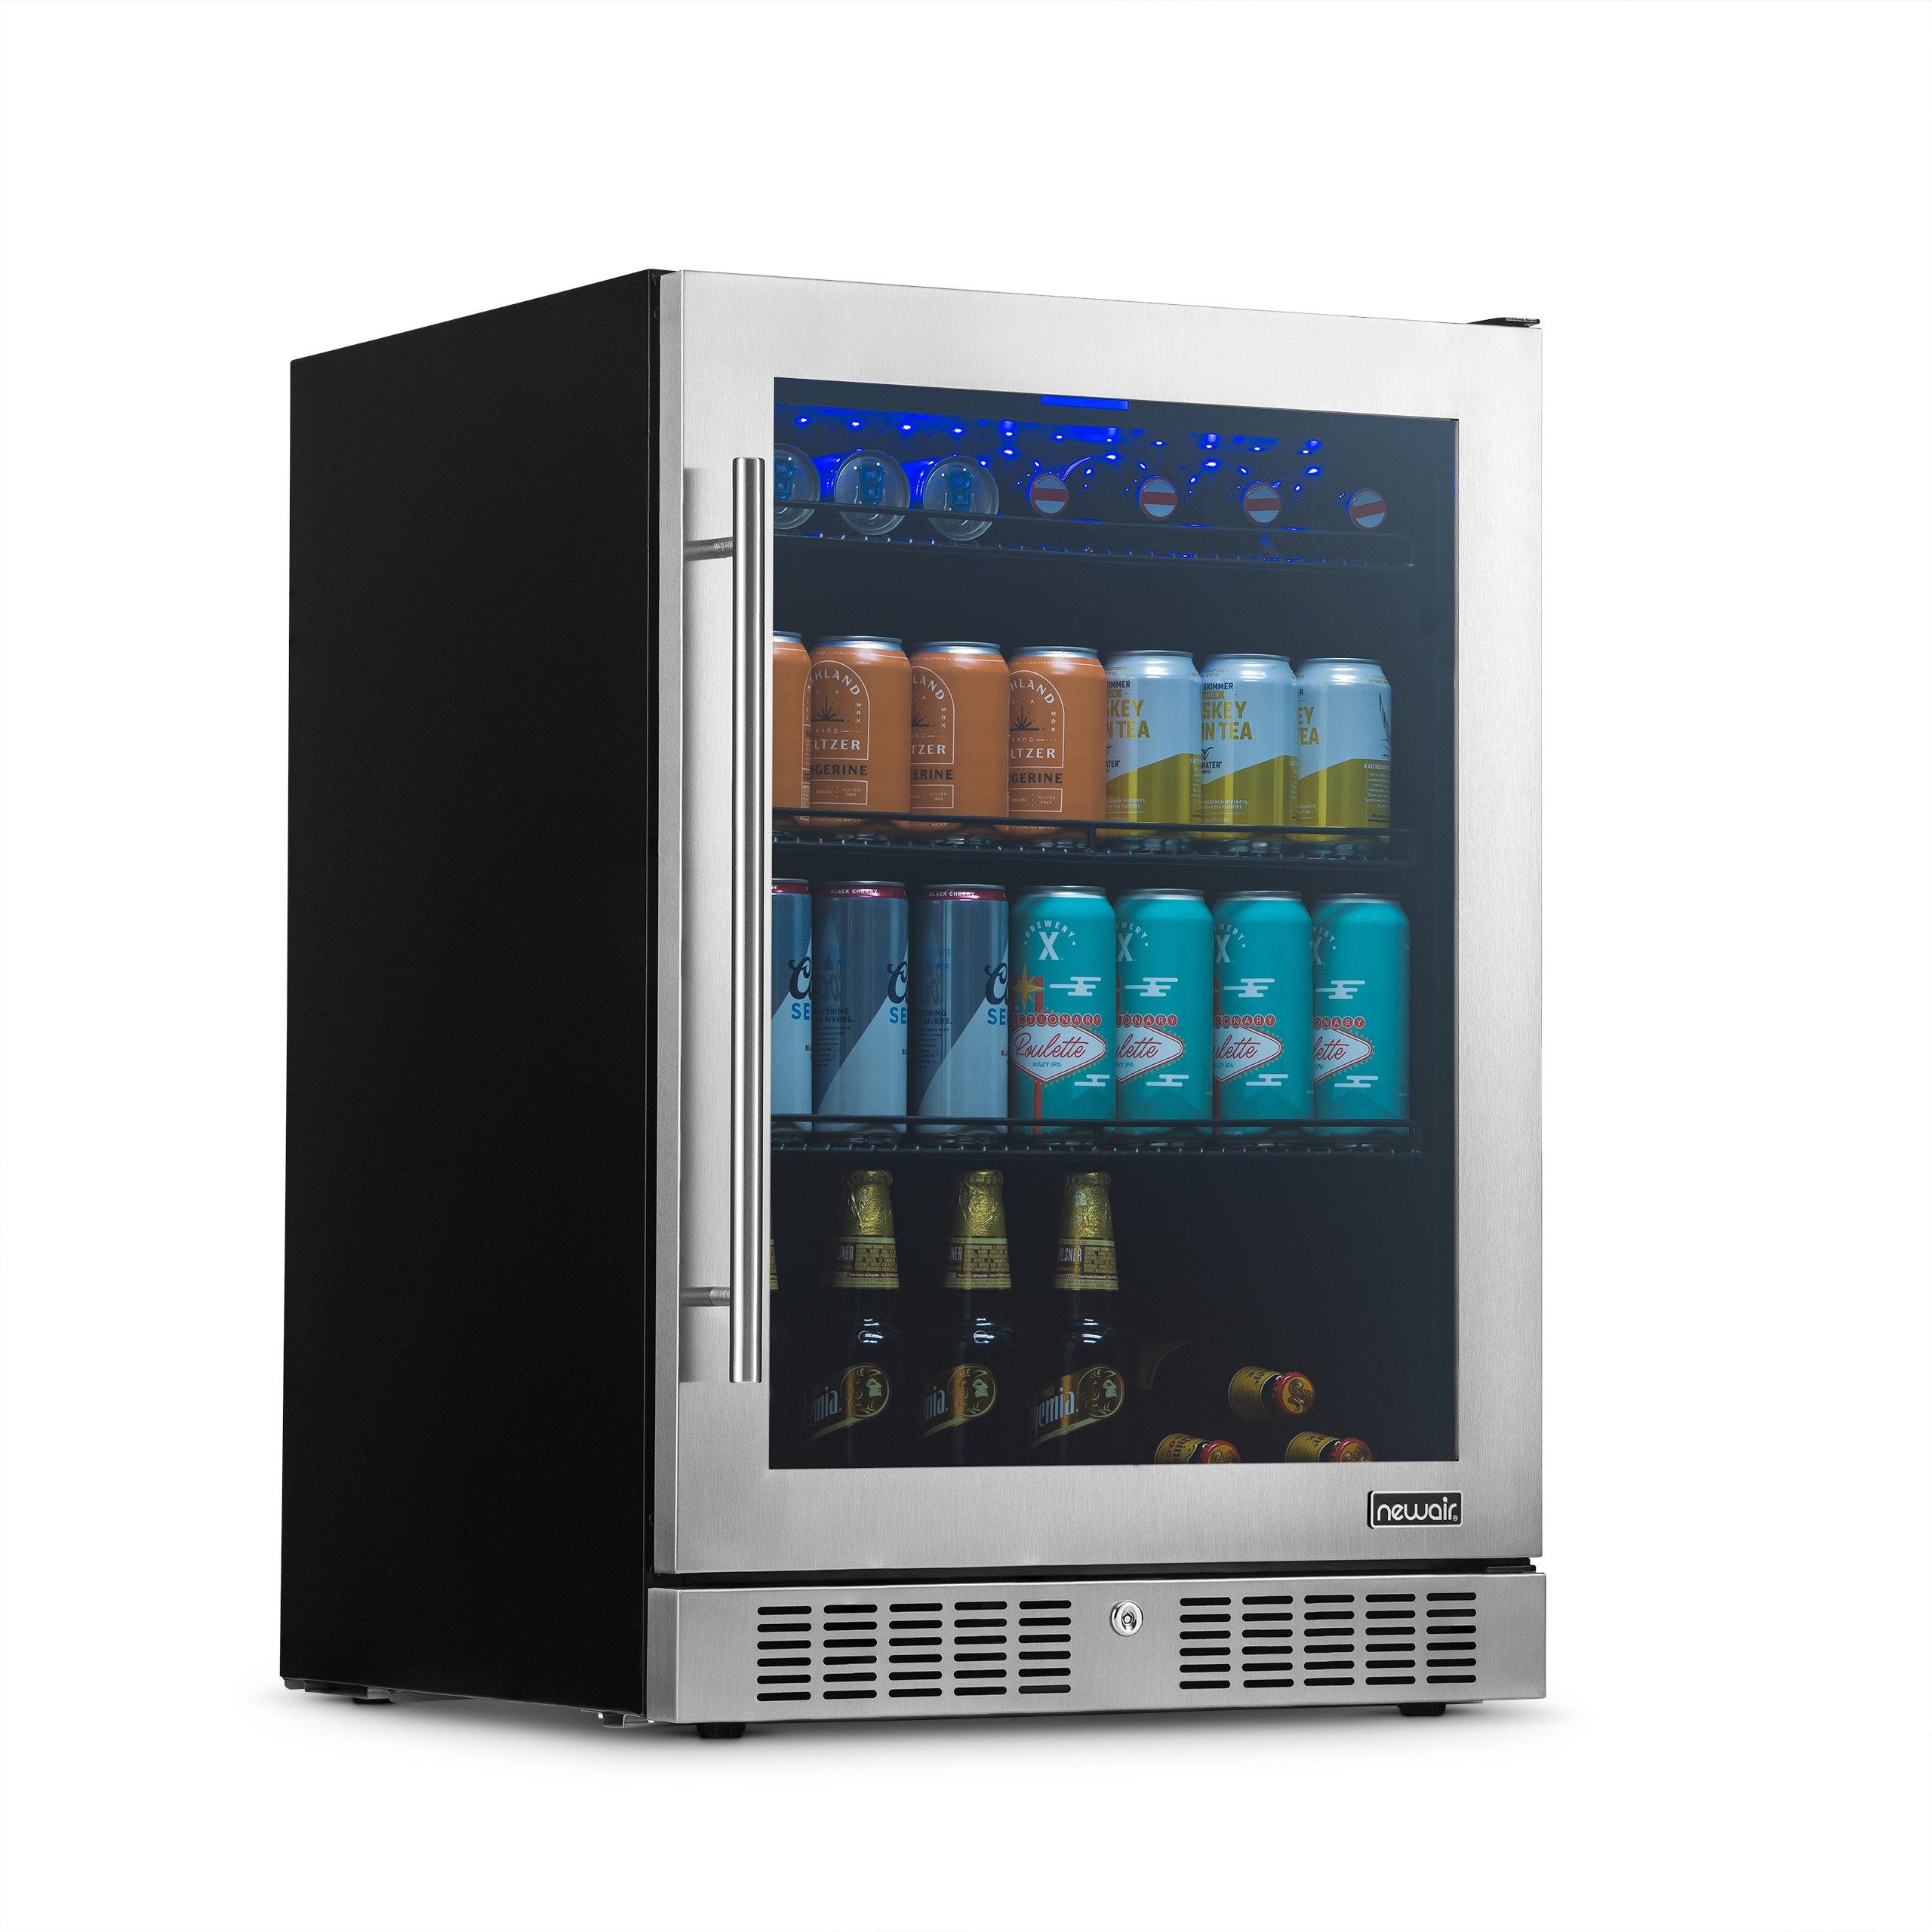 Smart Beverage Cooler Cup Fast Cooler Electric Cooling Mug Mini Desktop  Refrigerator for Cola Wine Portable